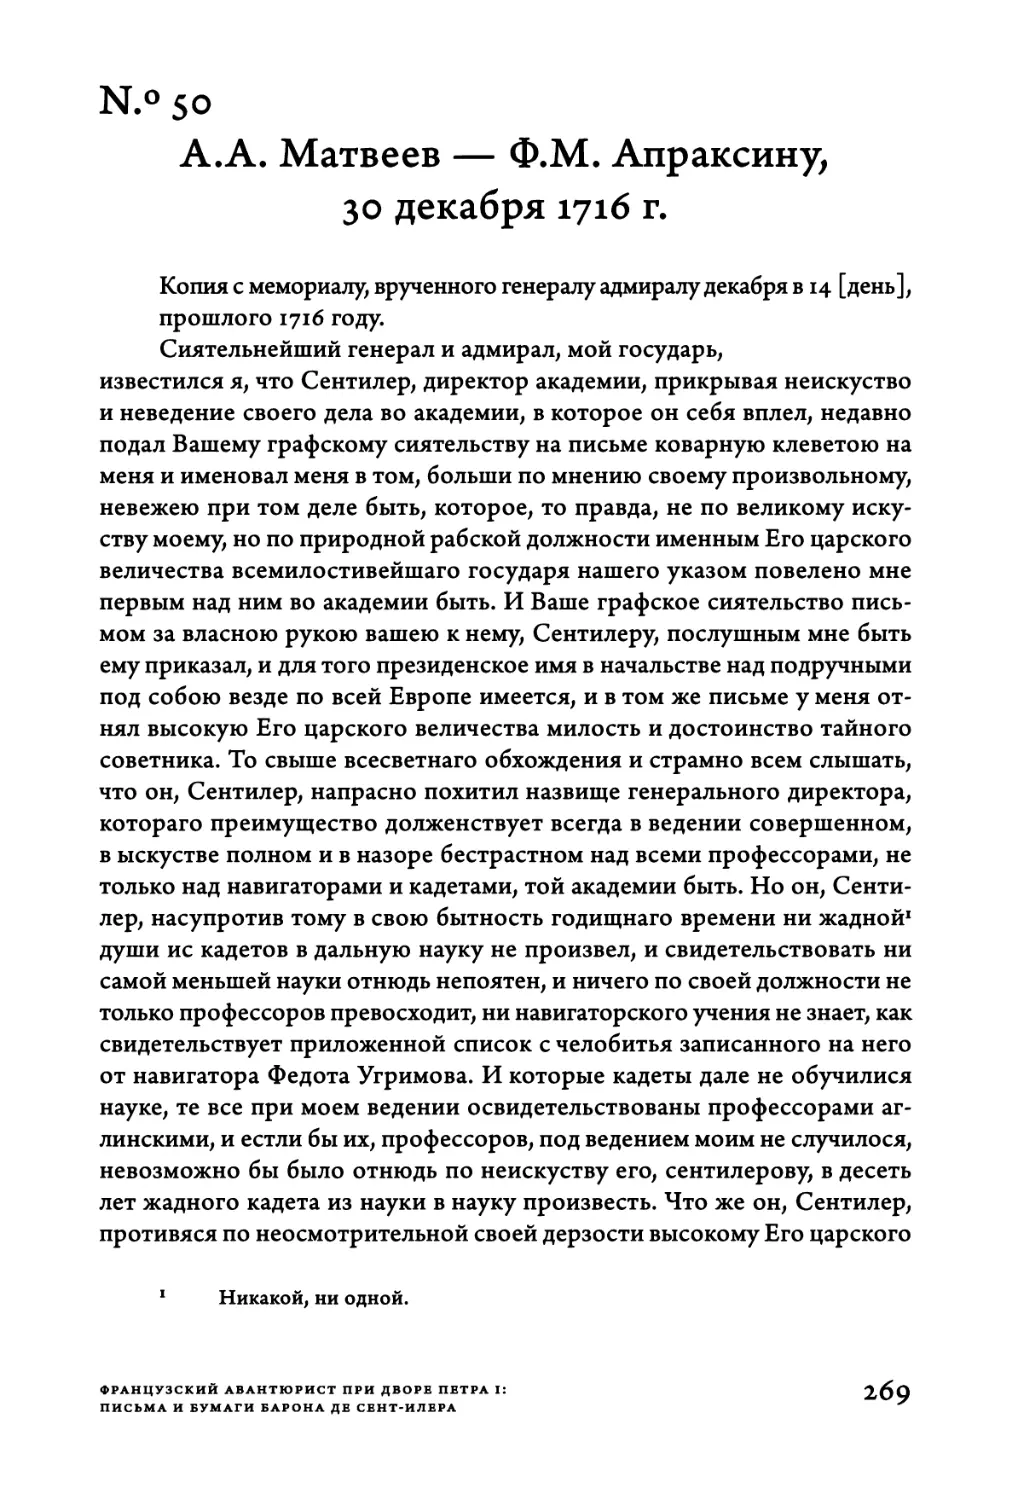 Ν.°50. A.A. Матвеев — Ф.М. Апраксину, 30 декабря 1716 г.